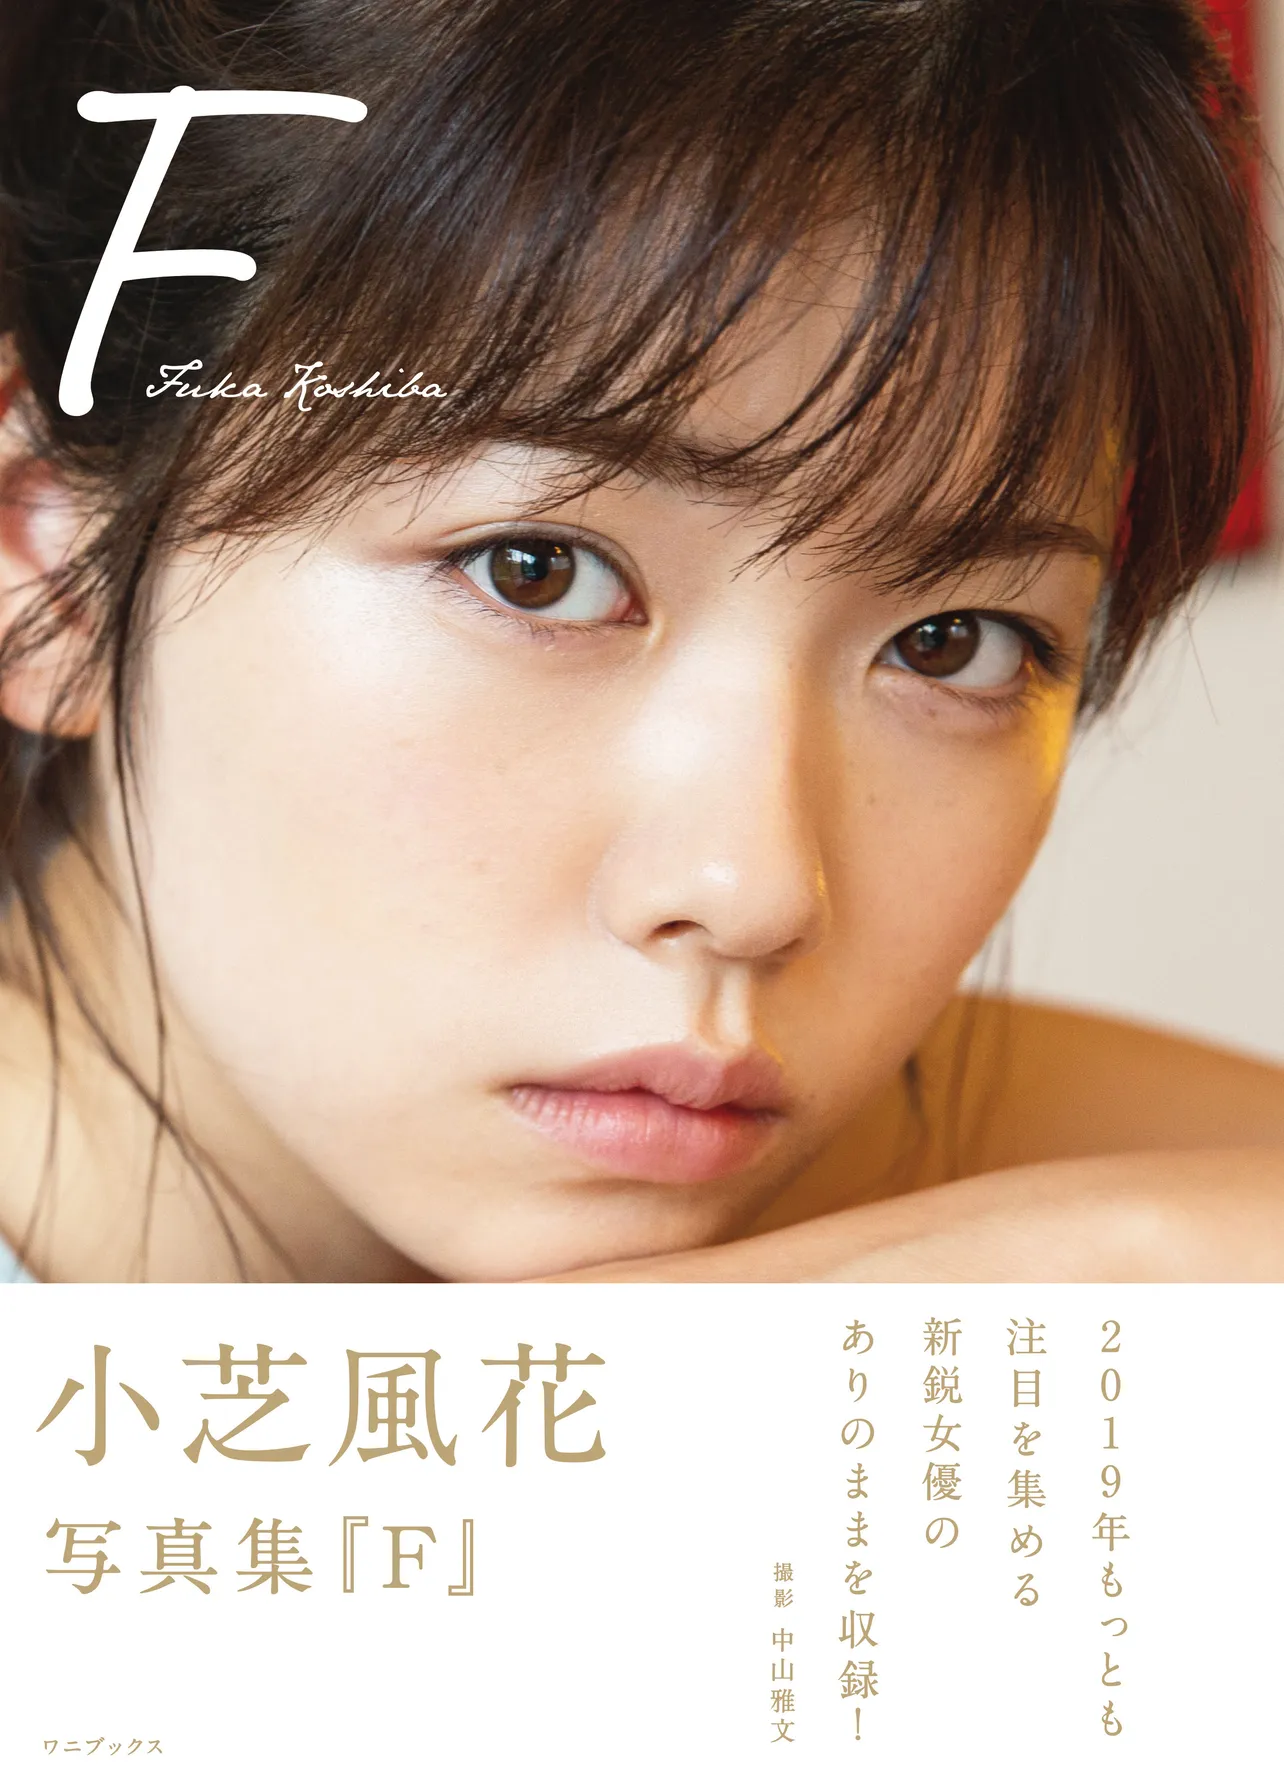 小芝風花2nd写真集「F」は、3240円(税込)で発売中